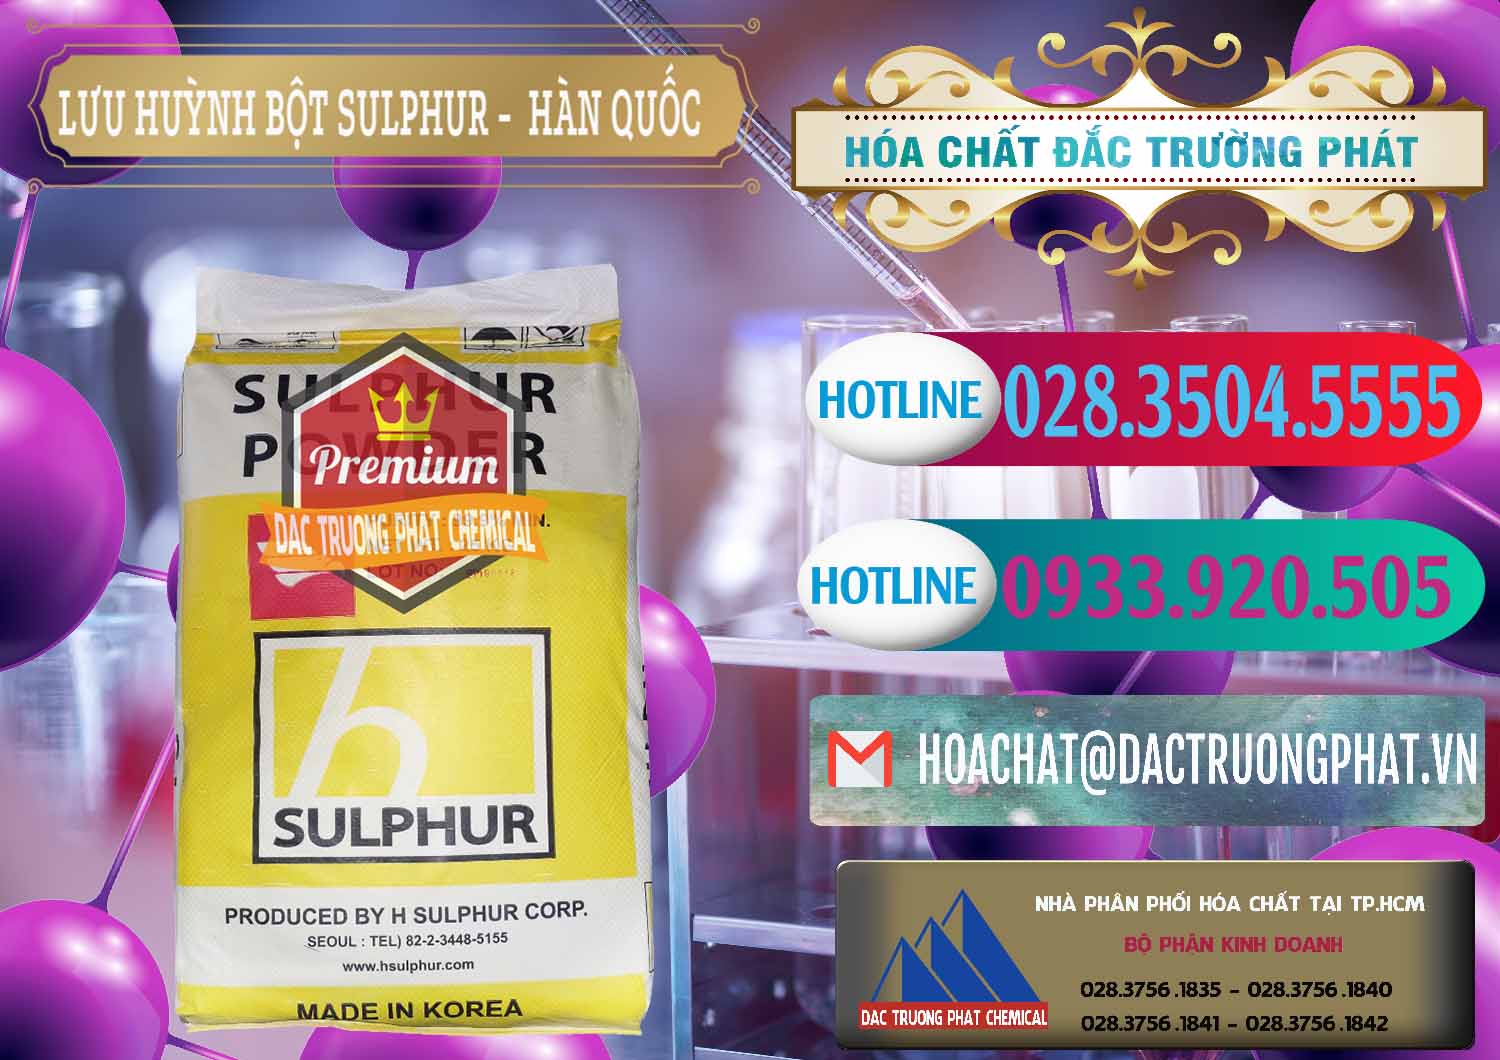 Chuyên phân phối _ bán Lưu huỳnh Bột - Sulfur Powder ( H Sulfur ) Hàn Quốc Korea - 0199 - Cty chuyên cung cấp & bán hóa chất tại TP.HCM - truongphat.vn